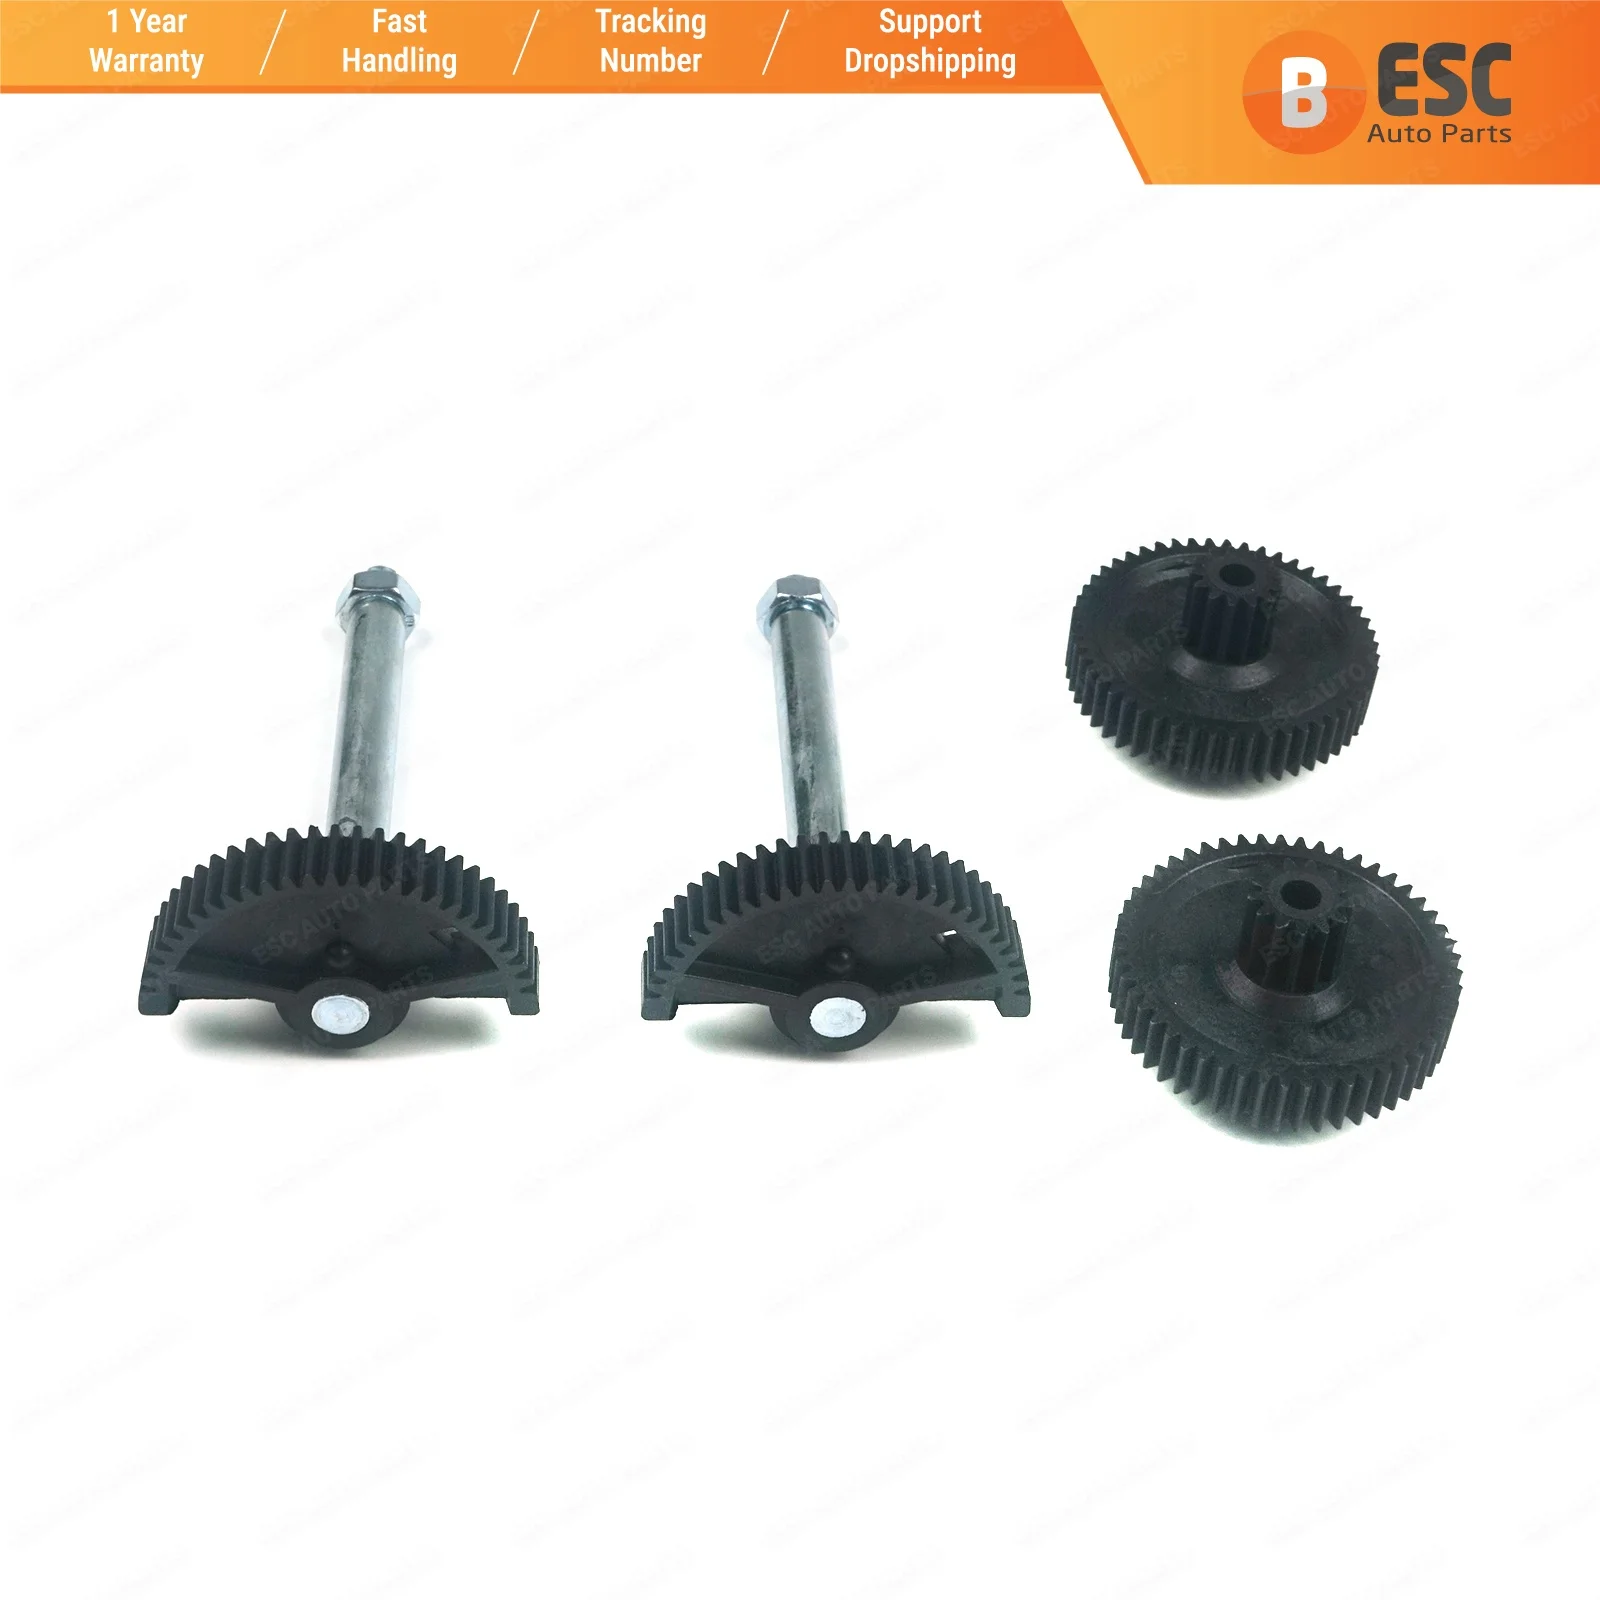 ESC EGE38 2 Sets 4 Pieces Throttle Body Actuator Gear Repair Kit 13627838085, 13627834494, 13627834494 for BMW M3 M5 M6